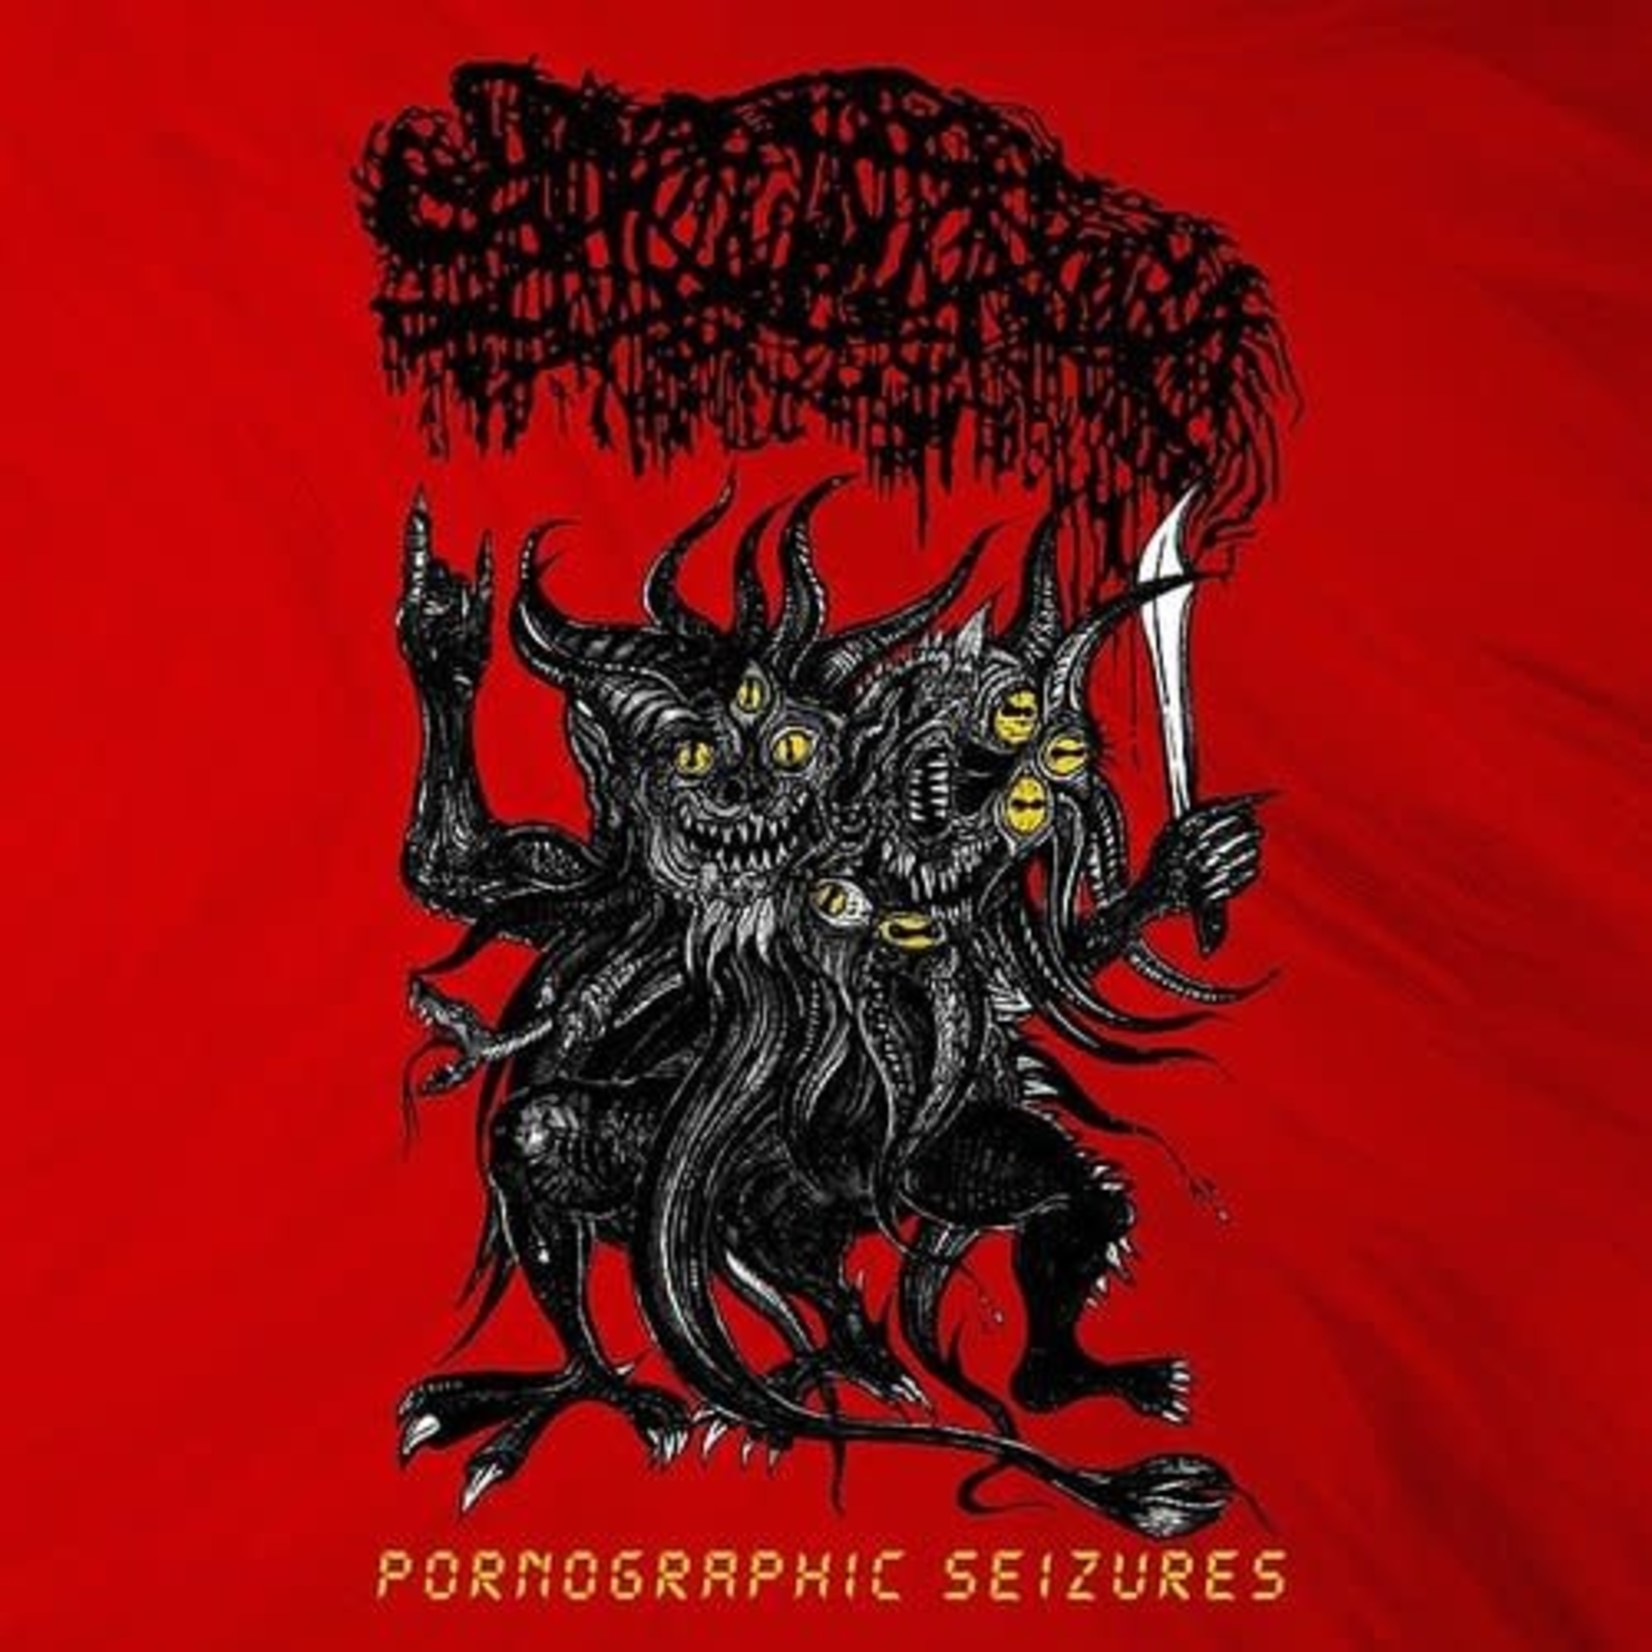 [New] Sanguisugabogg - Pornographic Seizures - EP (Re-Issue 2021, Poster)